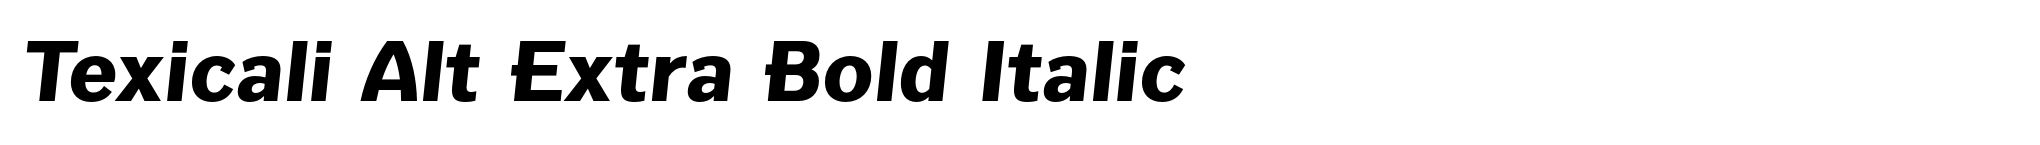 Texicali Alt Extra Bold Italic image